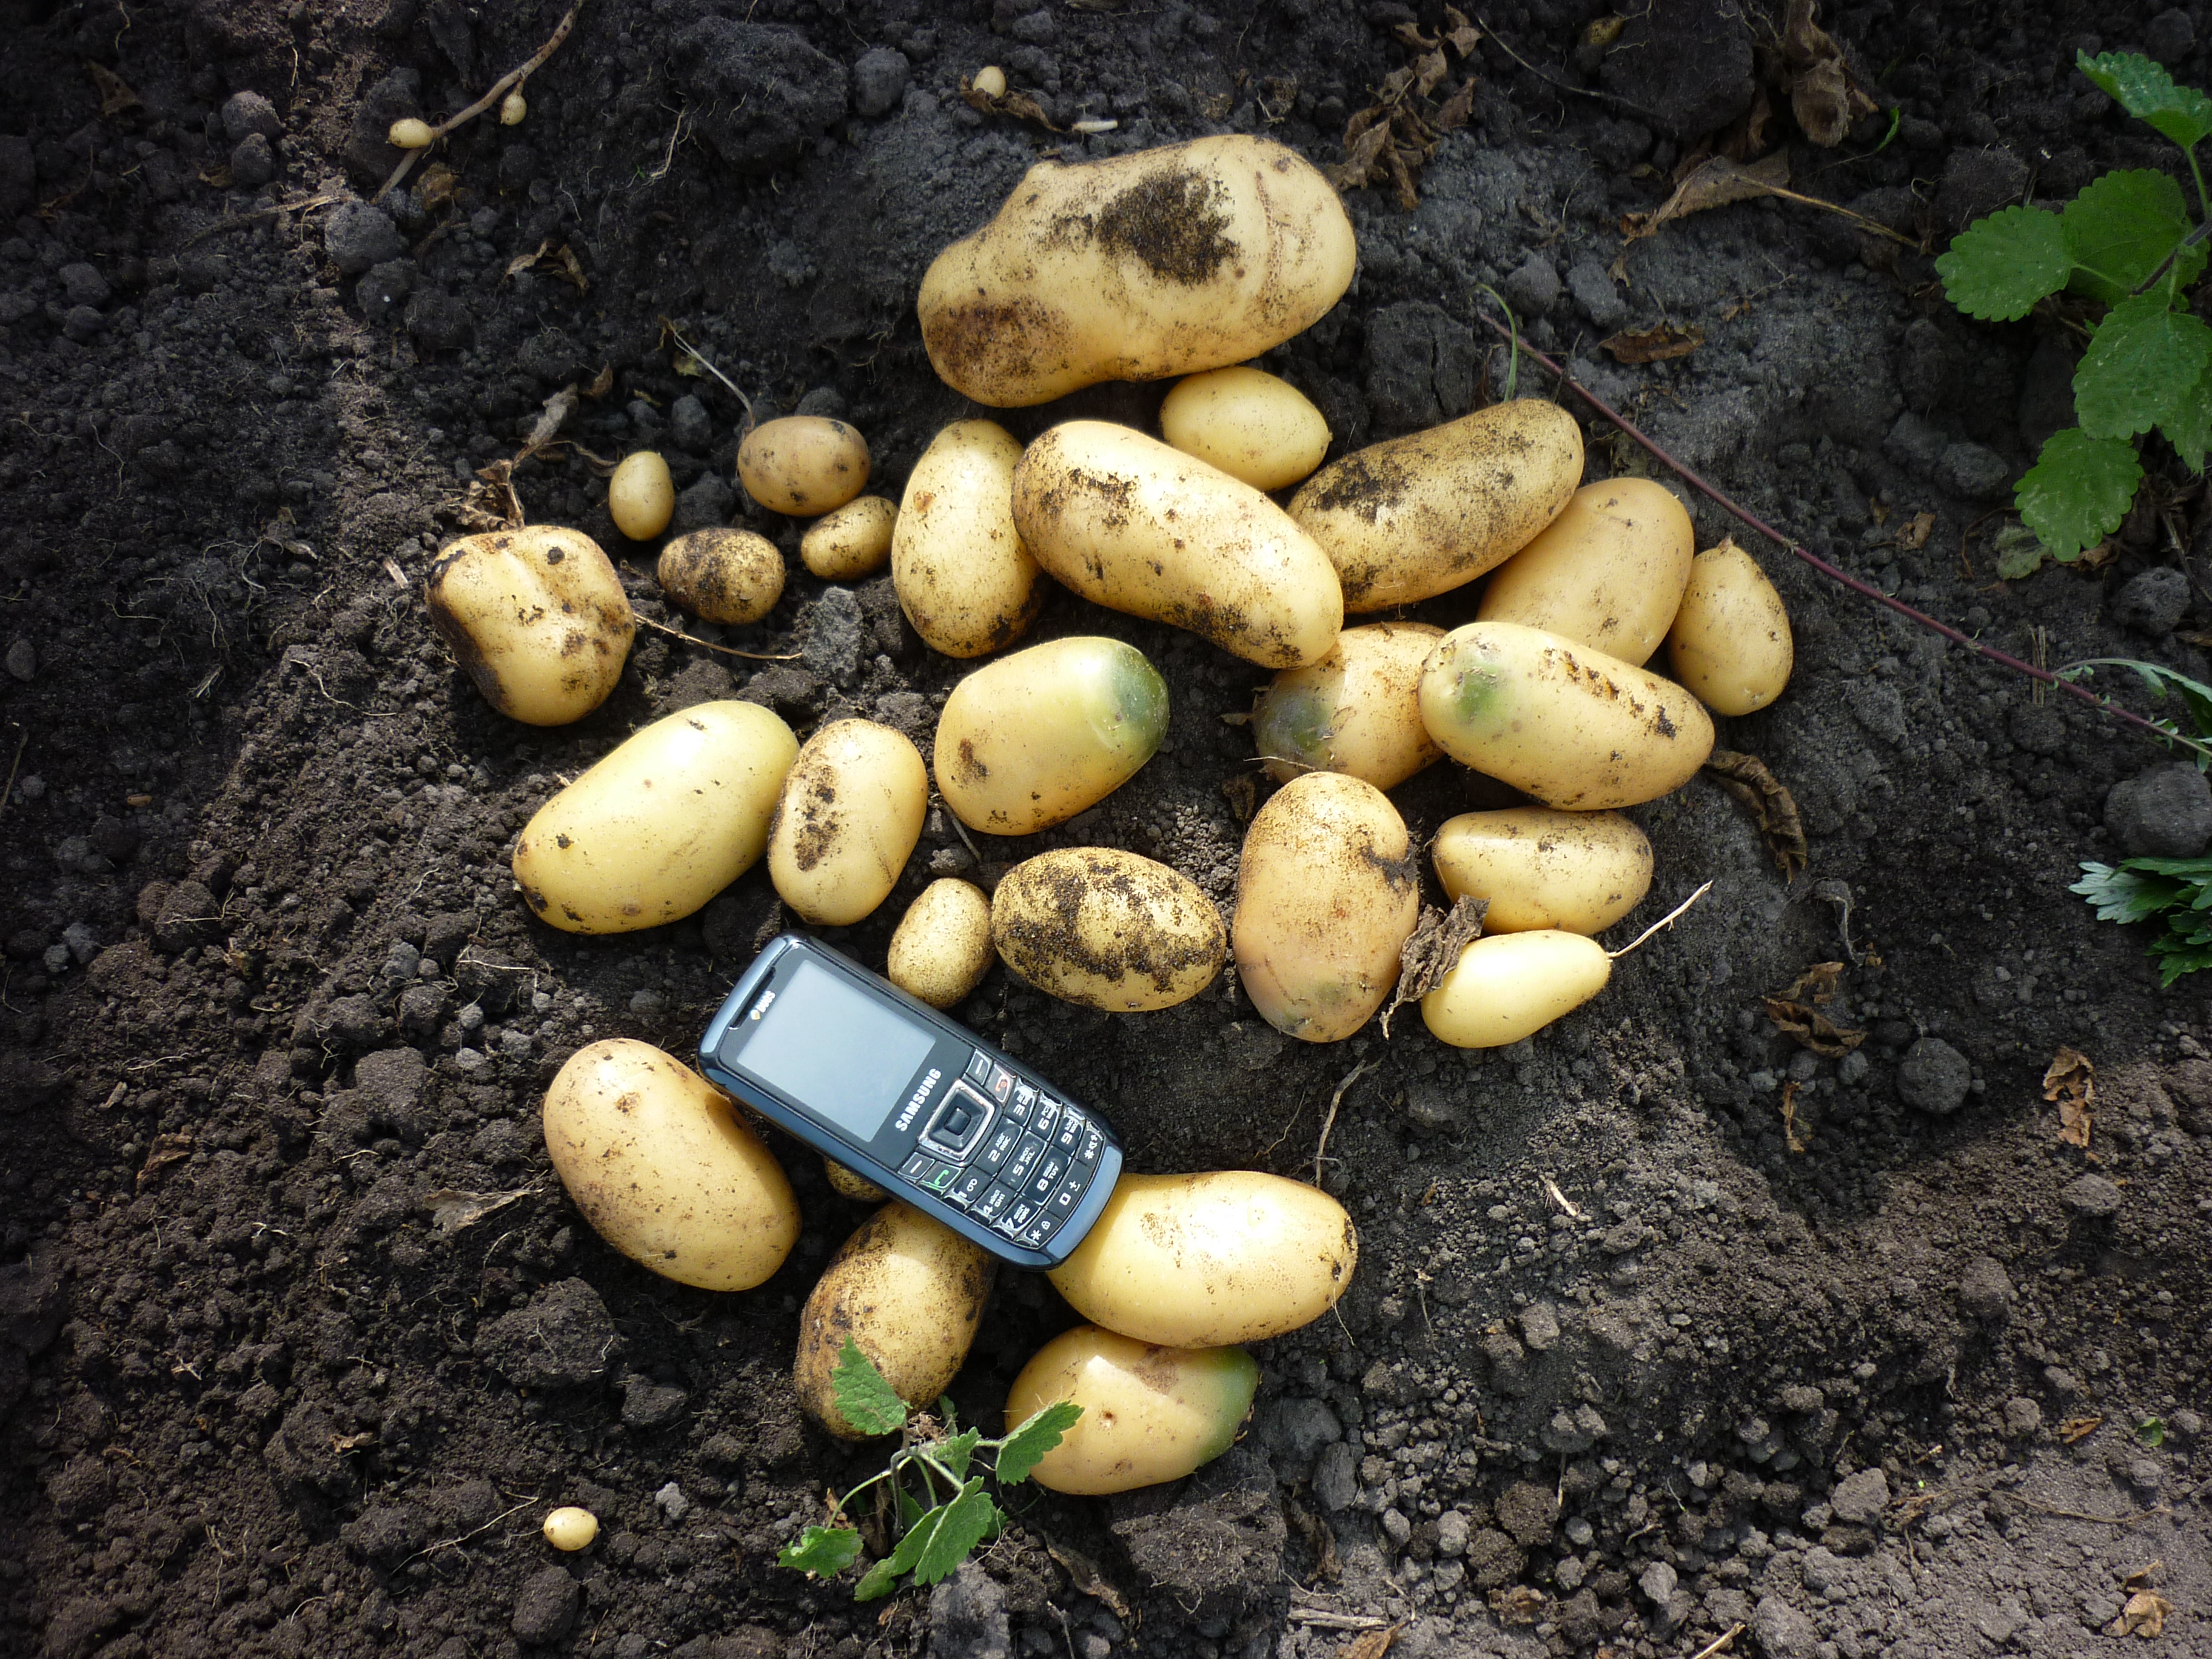 Картофель королева анна: характеристика и описание сорта, выращивание и уход